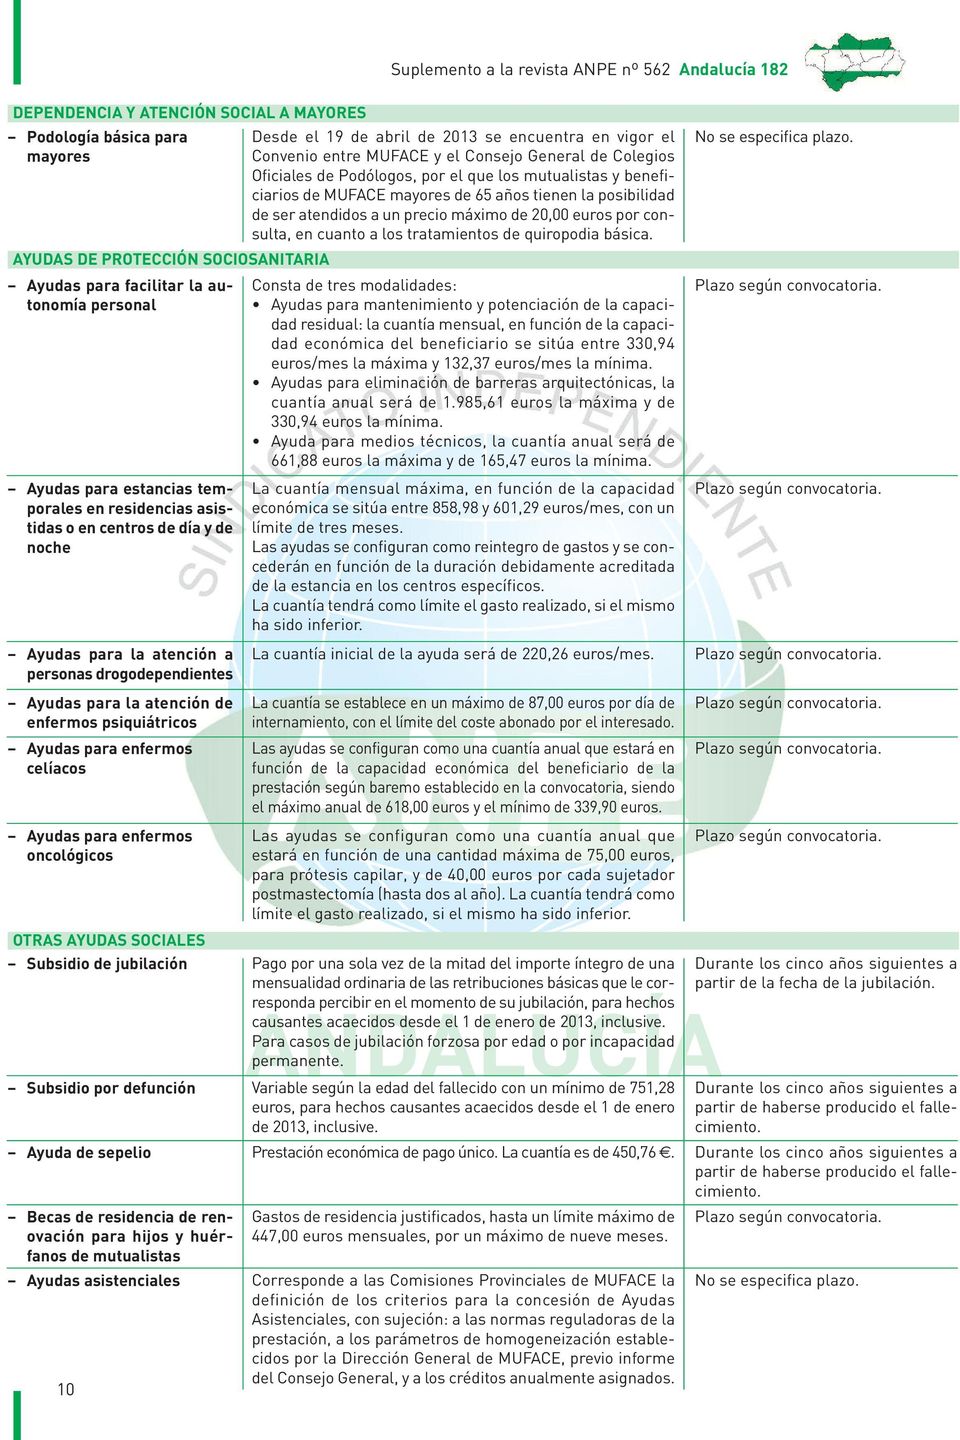 enfermos oncológicos Suplemento a la revista ANPE nº 562 Andalucía 182 Desde el 19 de abril de 2013 se encuentra en vigor el Convenio entre MUFACE y el Consejo General de Colegios Oficiales de